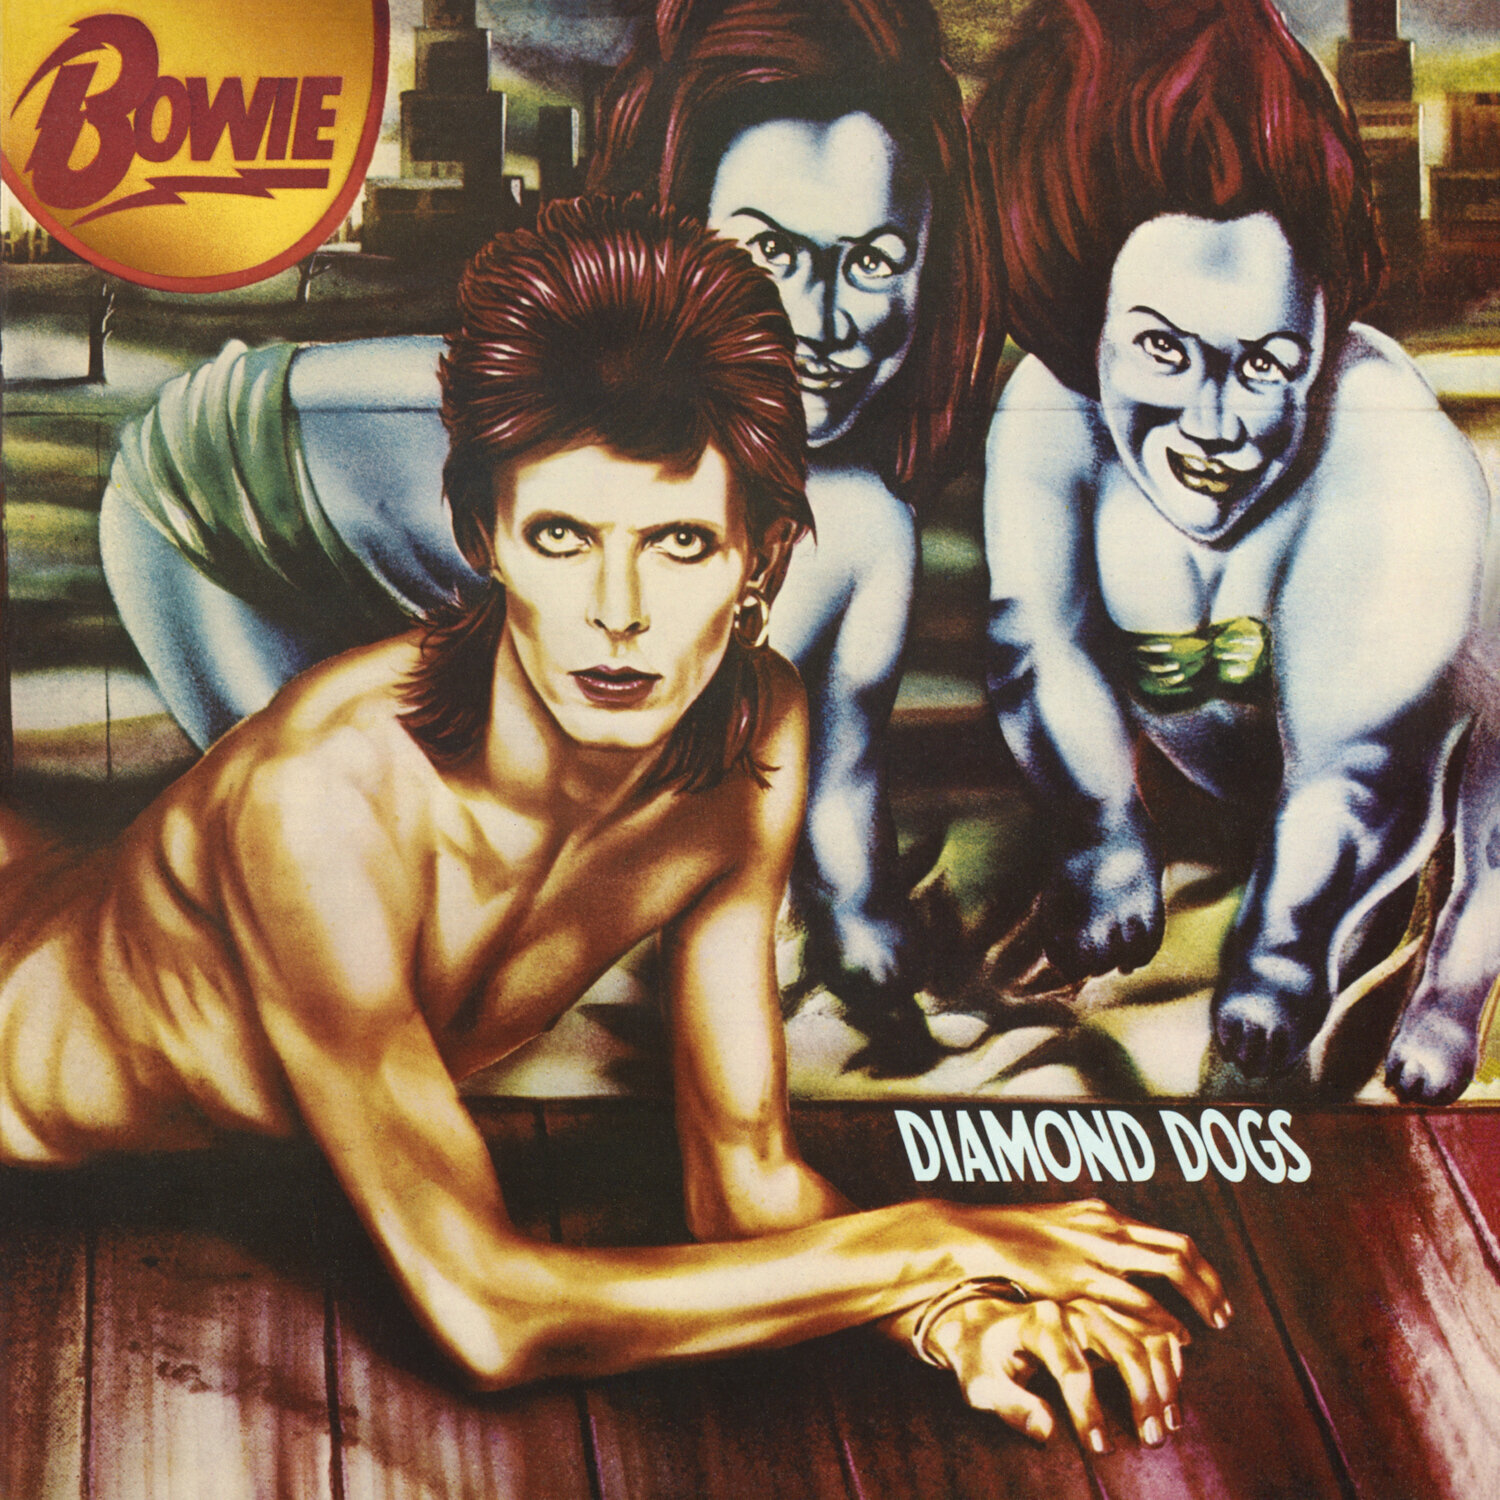 Schallplatte David Bowie - Diamond Dogs (50th Anniversary) (Picture Disc) (LP)